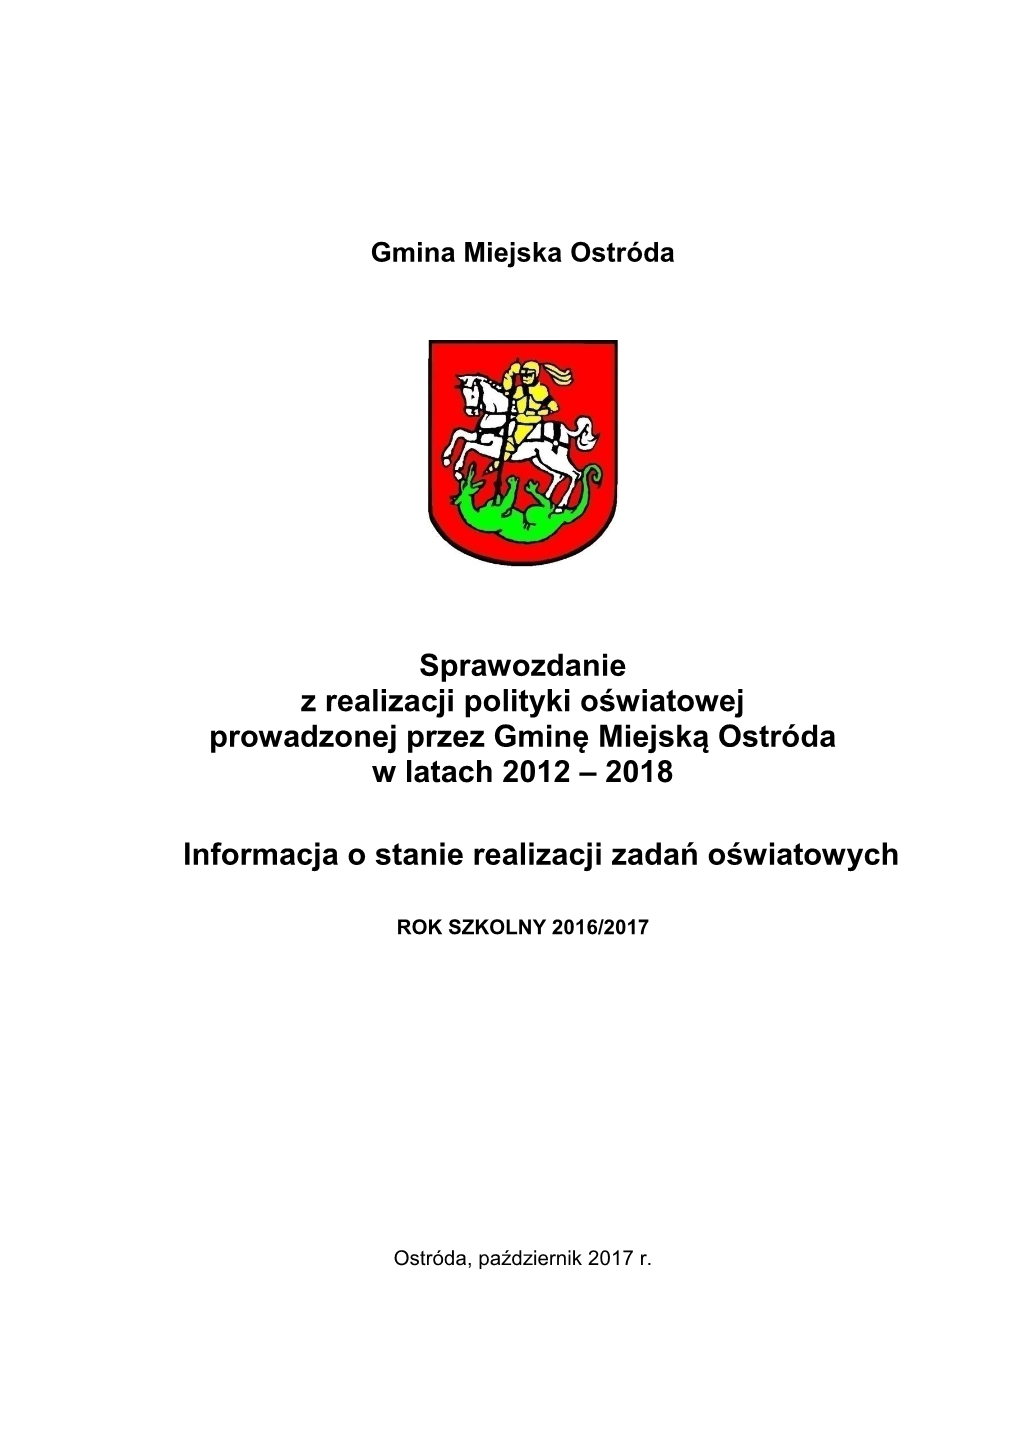 Sprawozdanie Z Realizacji Polityki Oświatowej Prowadzonej Przez Gminę Miejską Ostróda W Latach 2012 – 2018 Informacja O